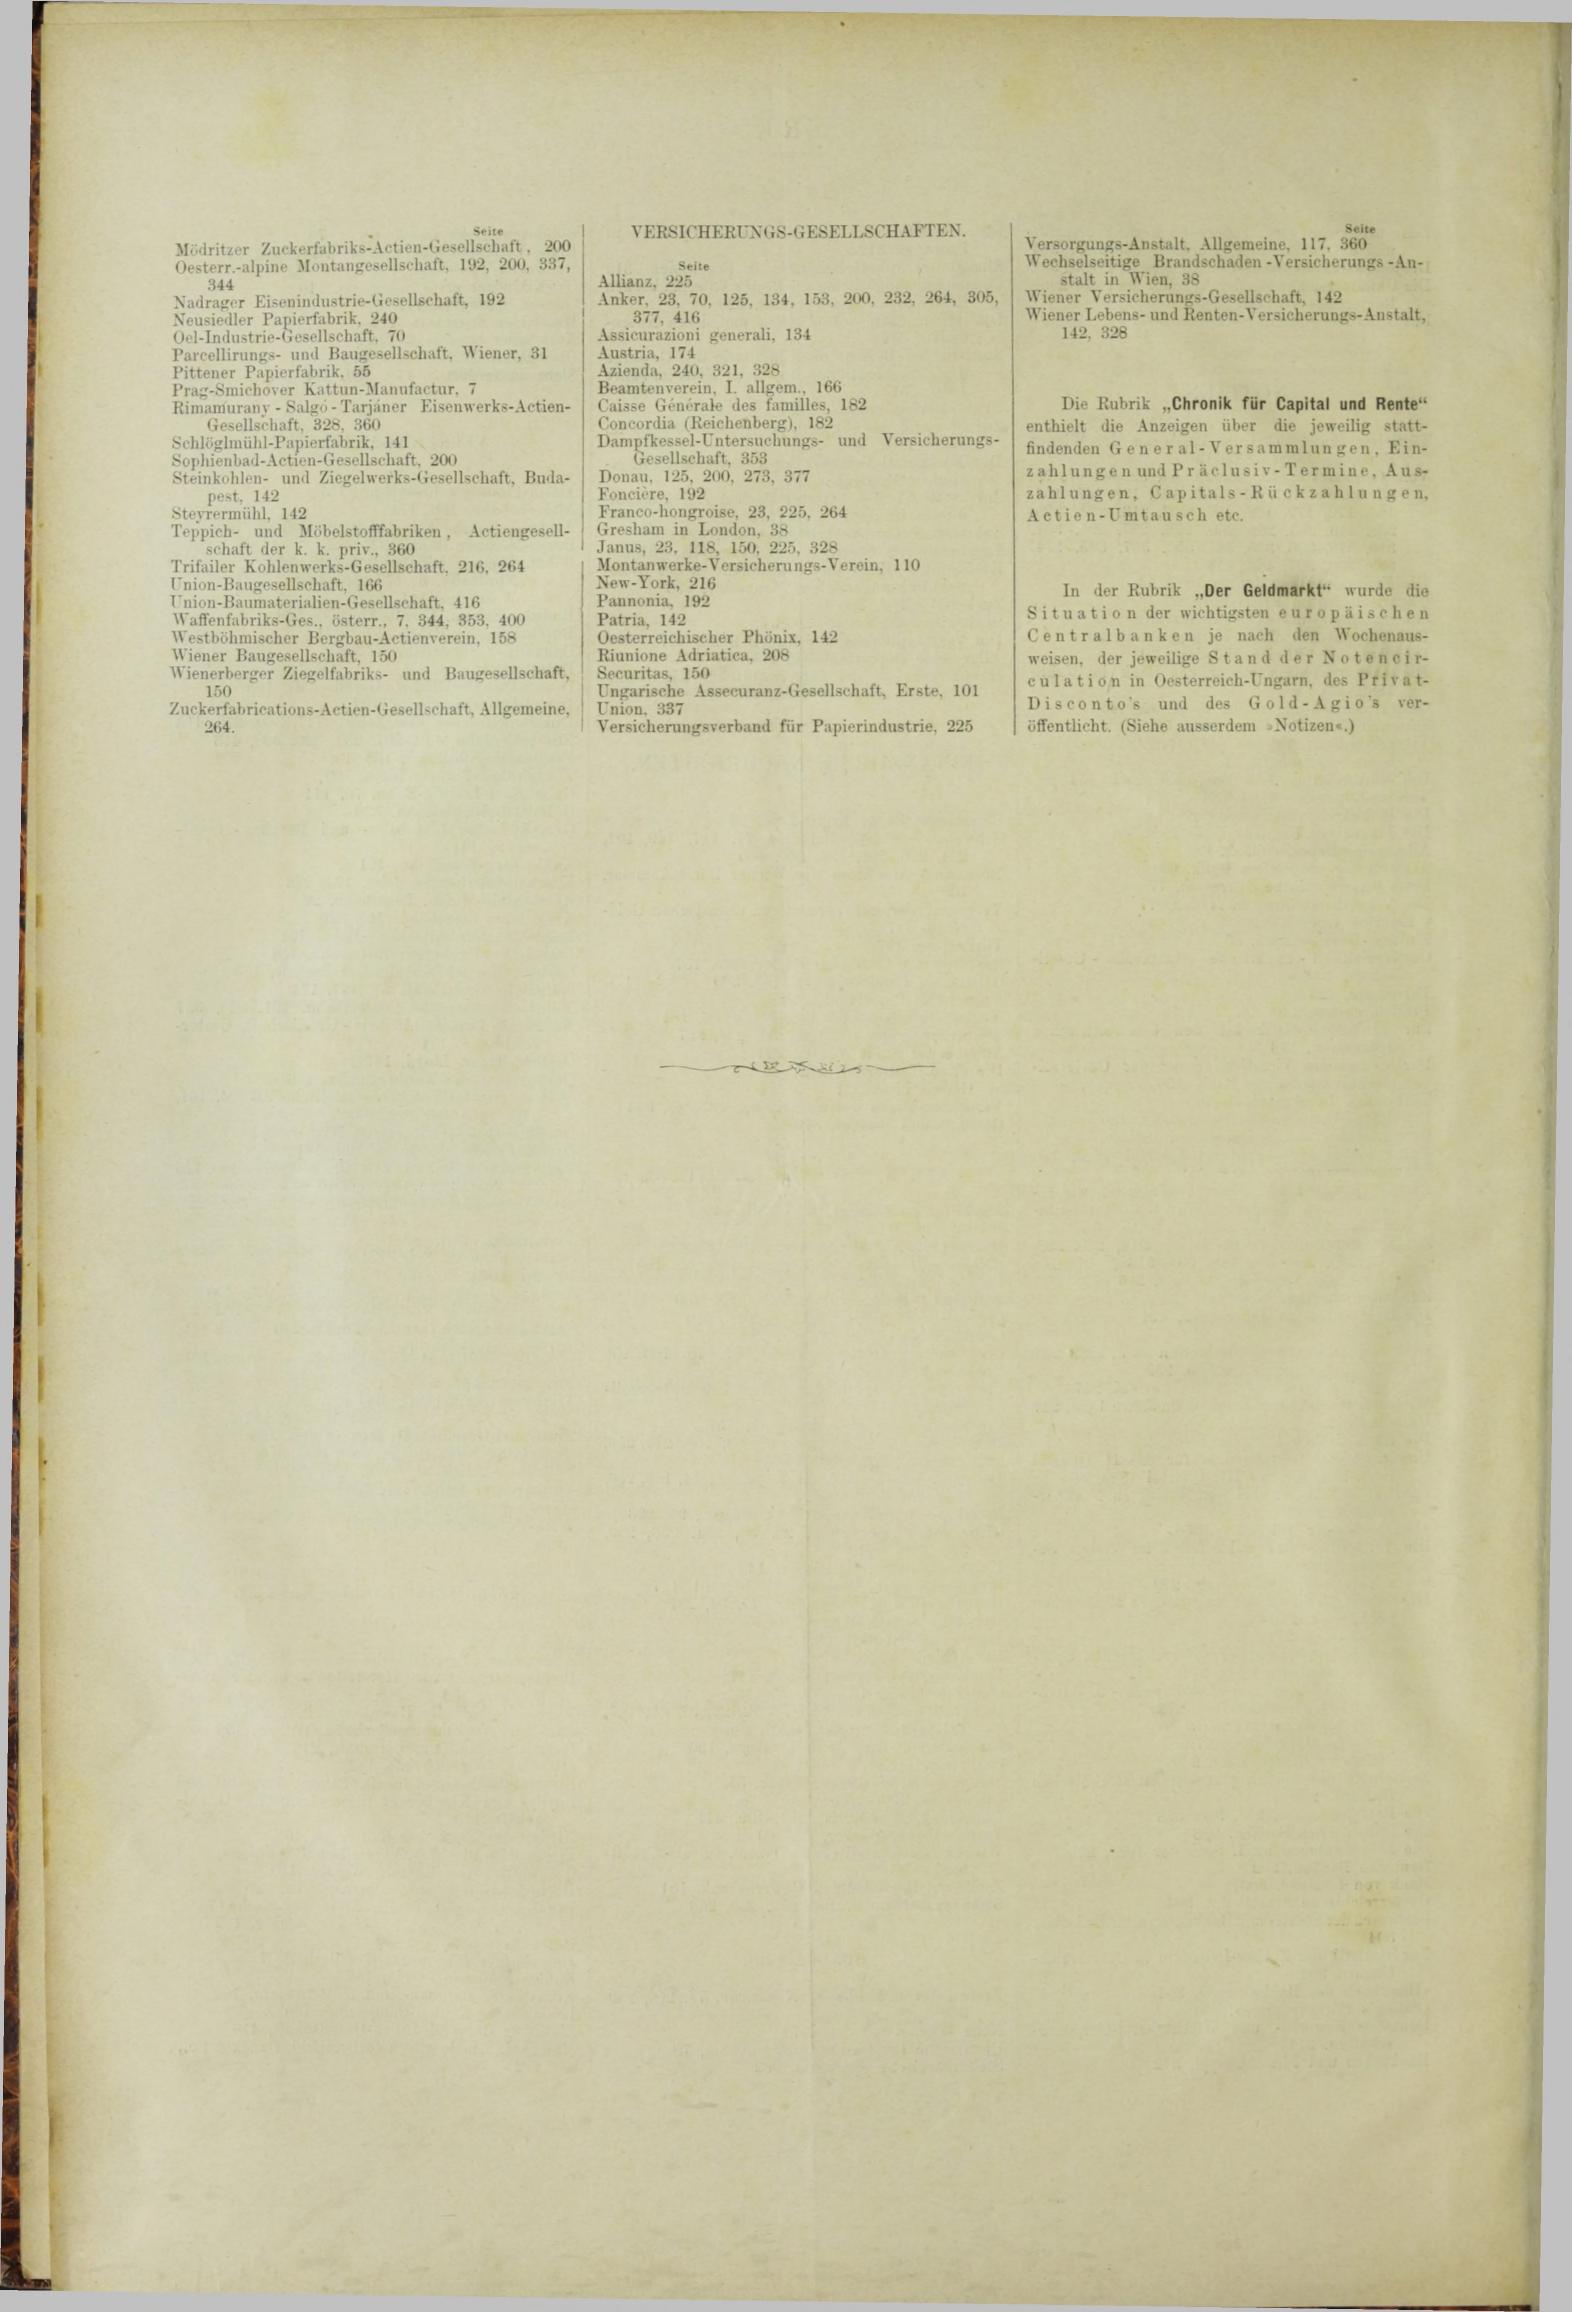 Der Tresor 15.02.1883 - Seite 12